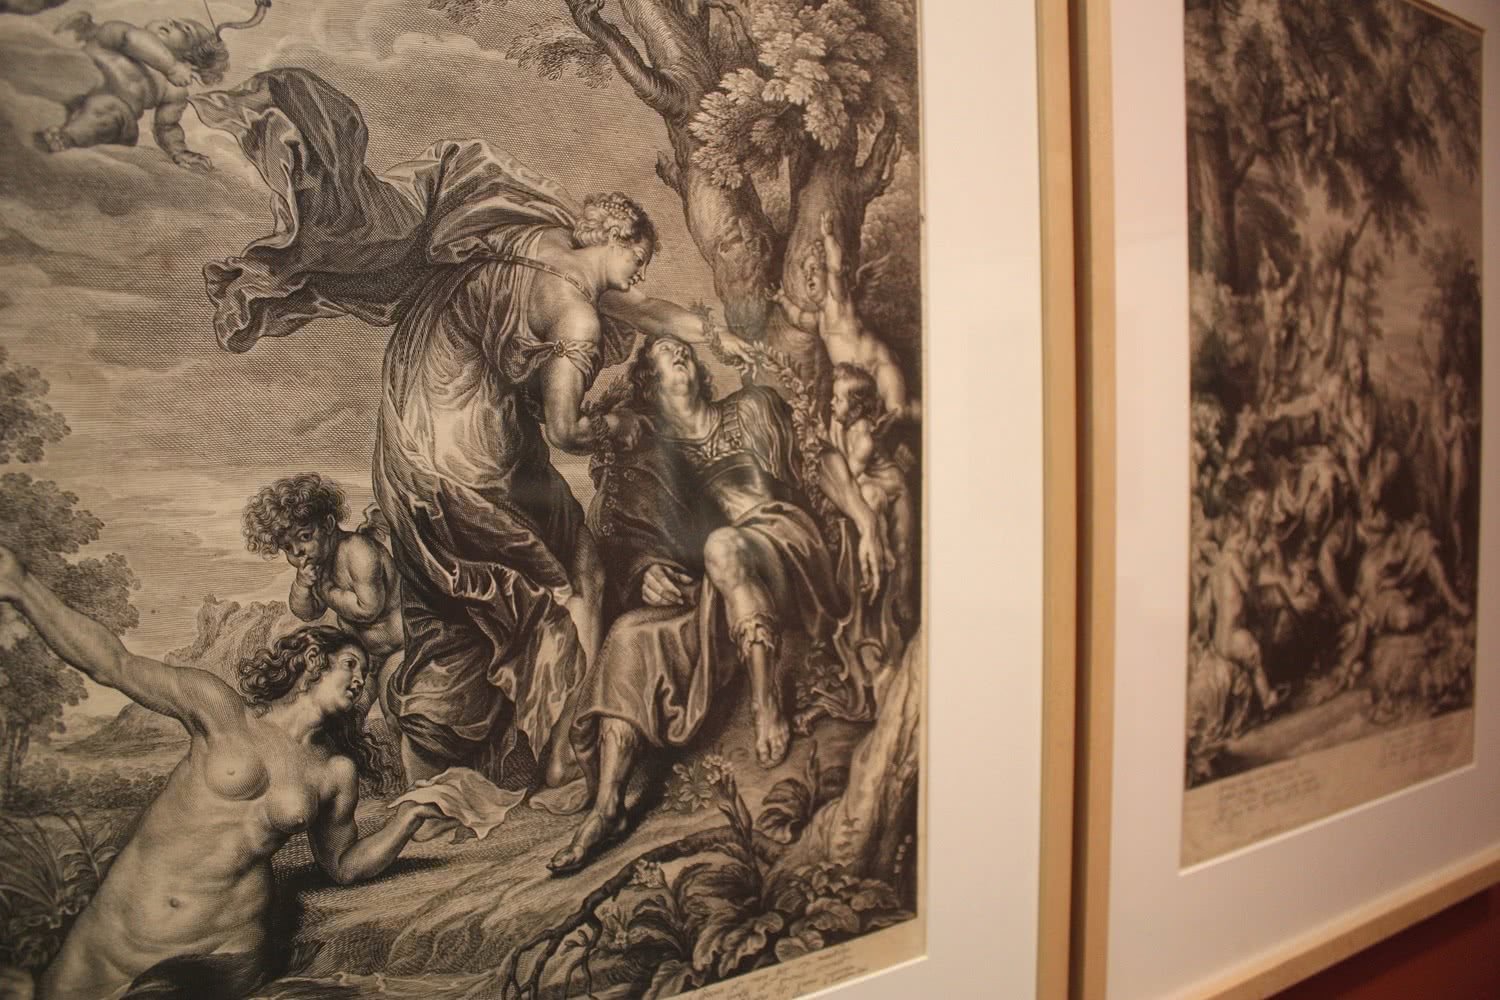 Vista de la exposición Rubens, Van Dyck y la Edad de Oro del grabado flamenco. 2015. Biblioteca Nacional de España. Foto: Luis Martín.